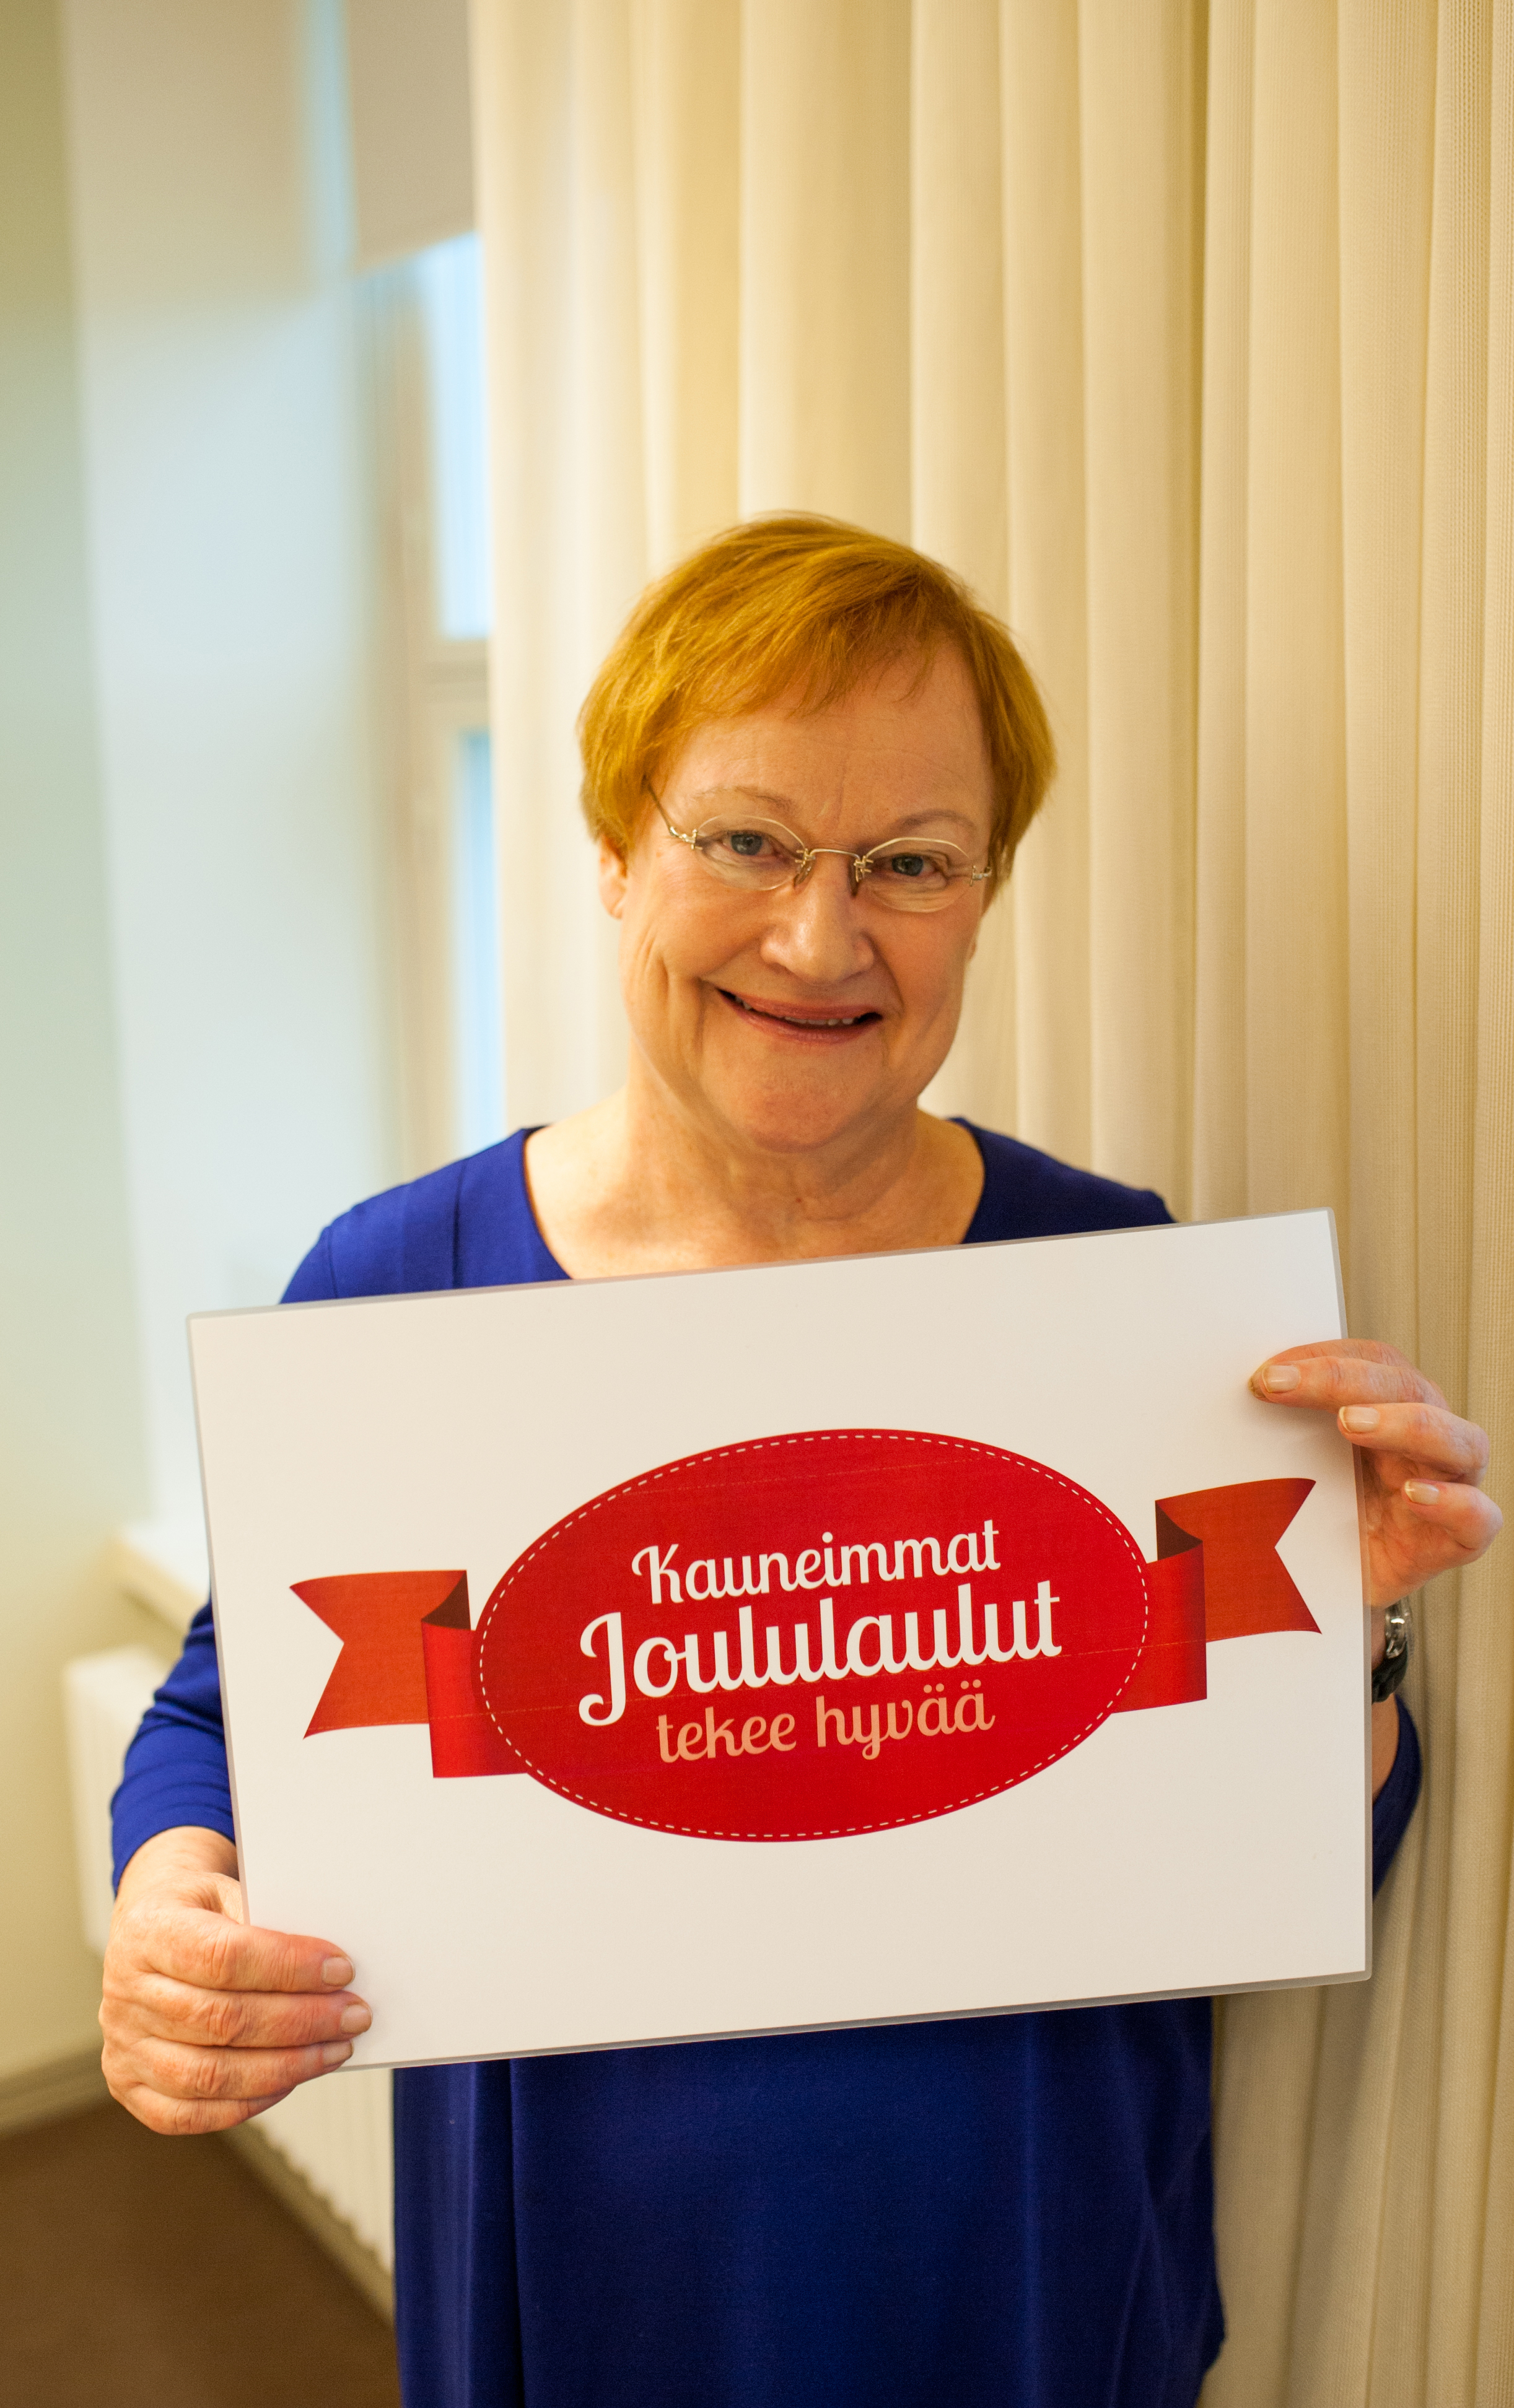 Presidentti Tarja Halonen on Kauneimpien Joululaulujen suojelija 2014. Kuva Joanna Lindén-Montes